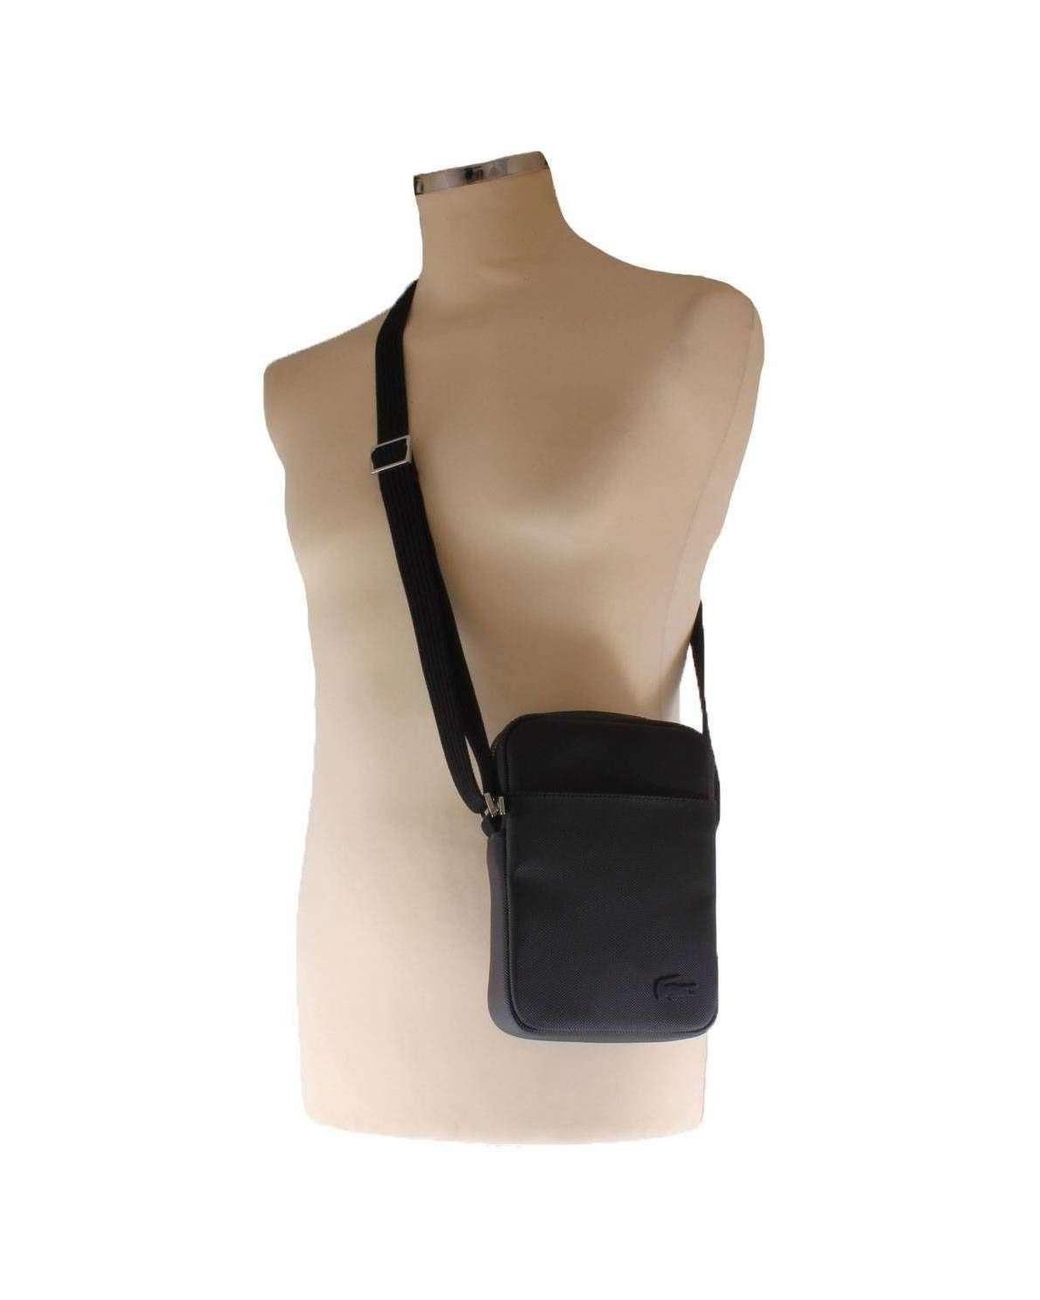 Lacoste Classic Petit Pique Vertical Zip Bag for Men - Lyst